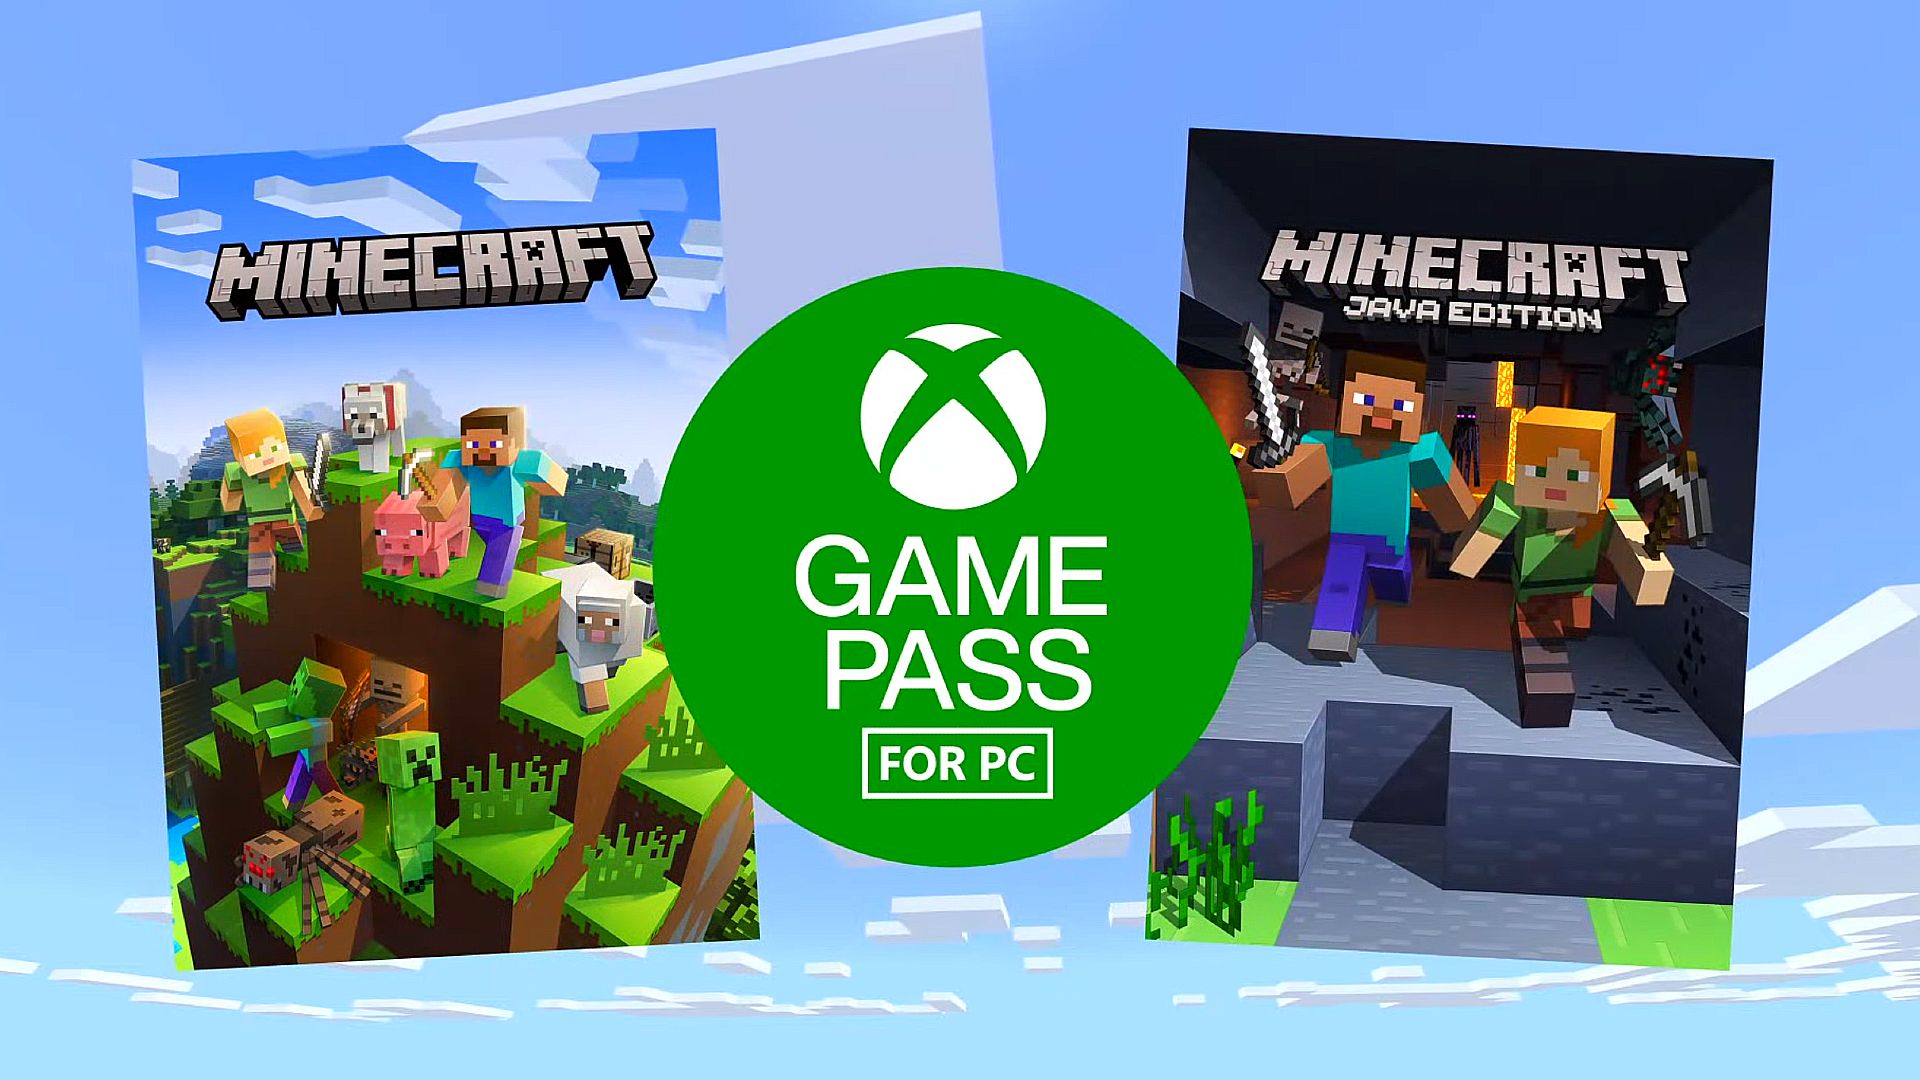 Minecraft-ın yaxşı versiyası Game Pass PC-yə gəlir, lakin GTA yoxdur: San Andreas